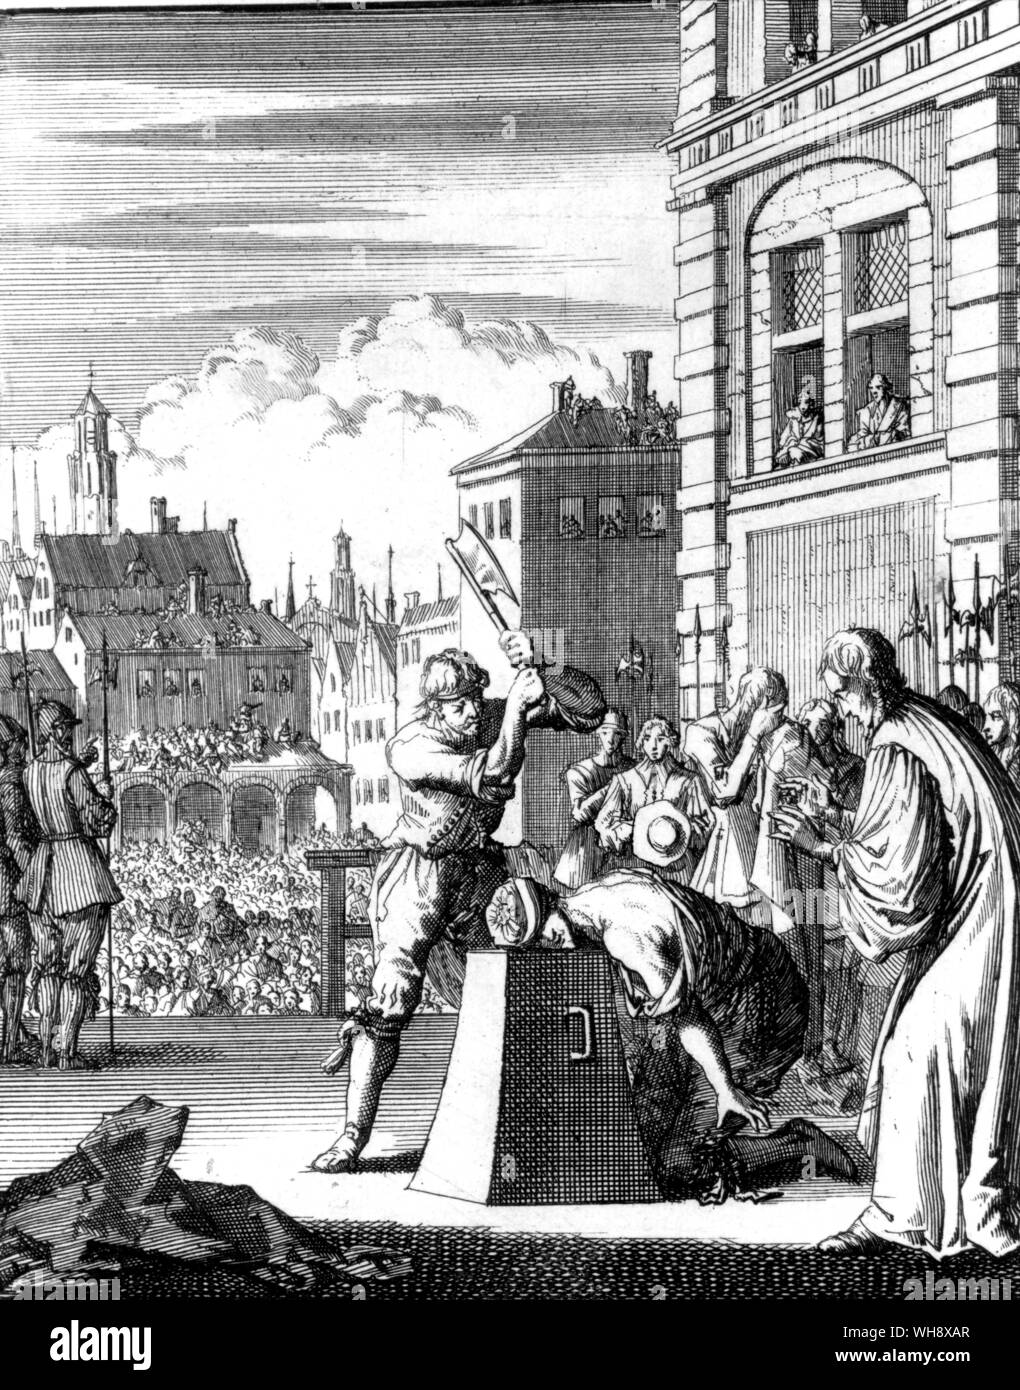 Une impression de Néerlandais Thomas Wentworth Staffords les exécutions. 1 er comte de Stafford (1593-1641) Homme politique Anglais Banque D'Images